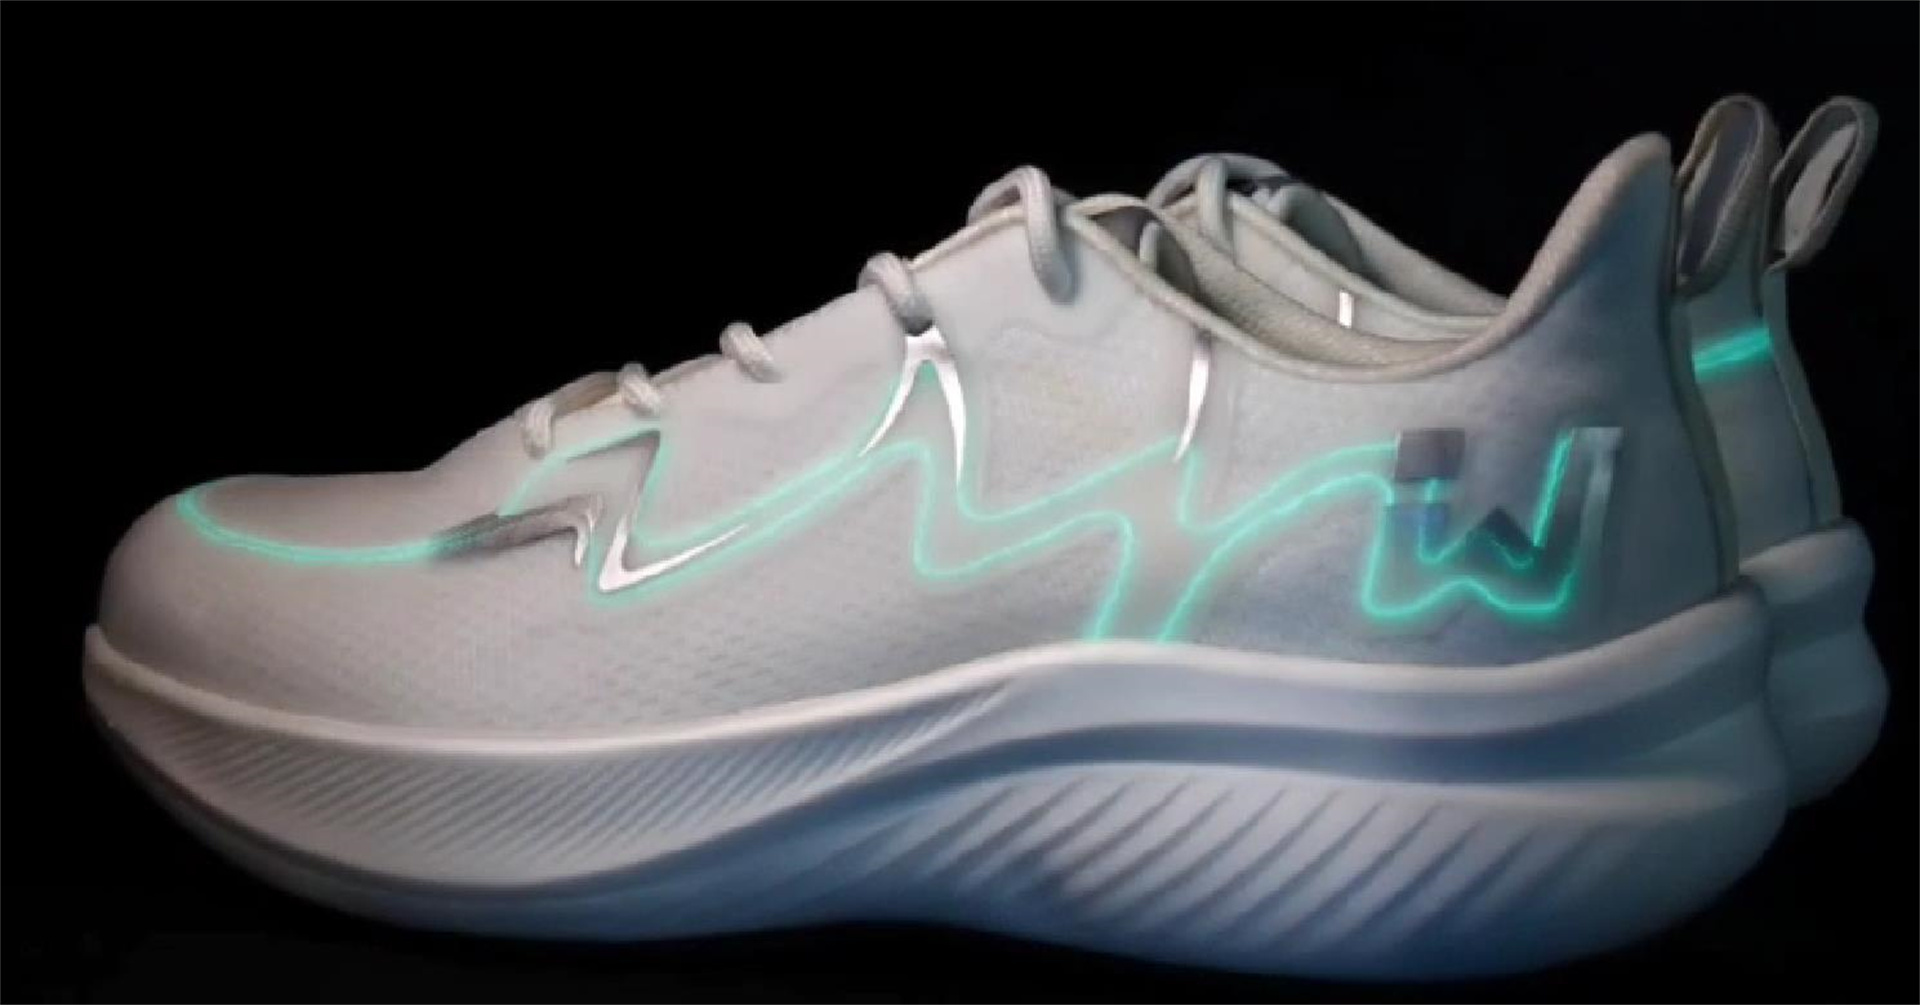 Luminous shoes